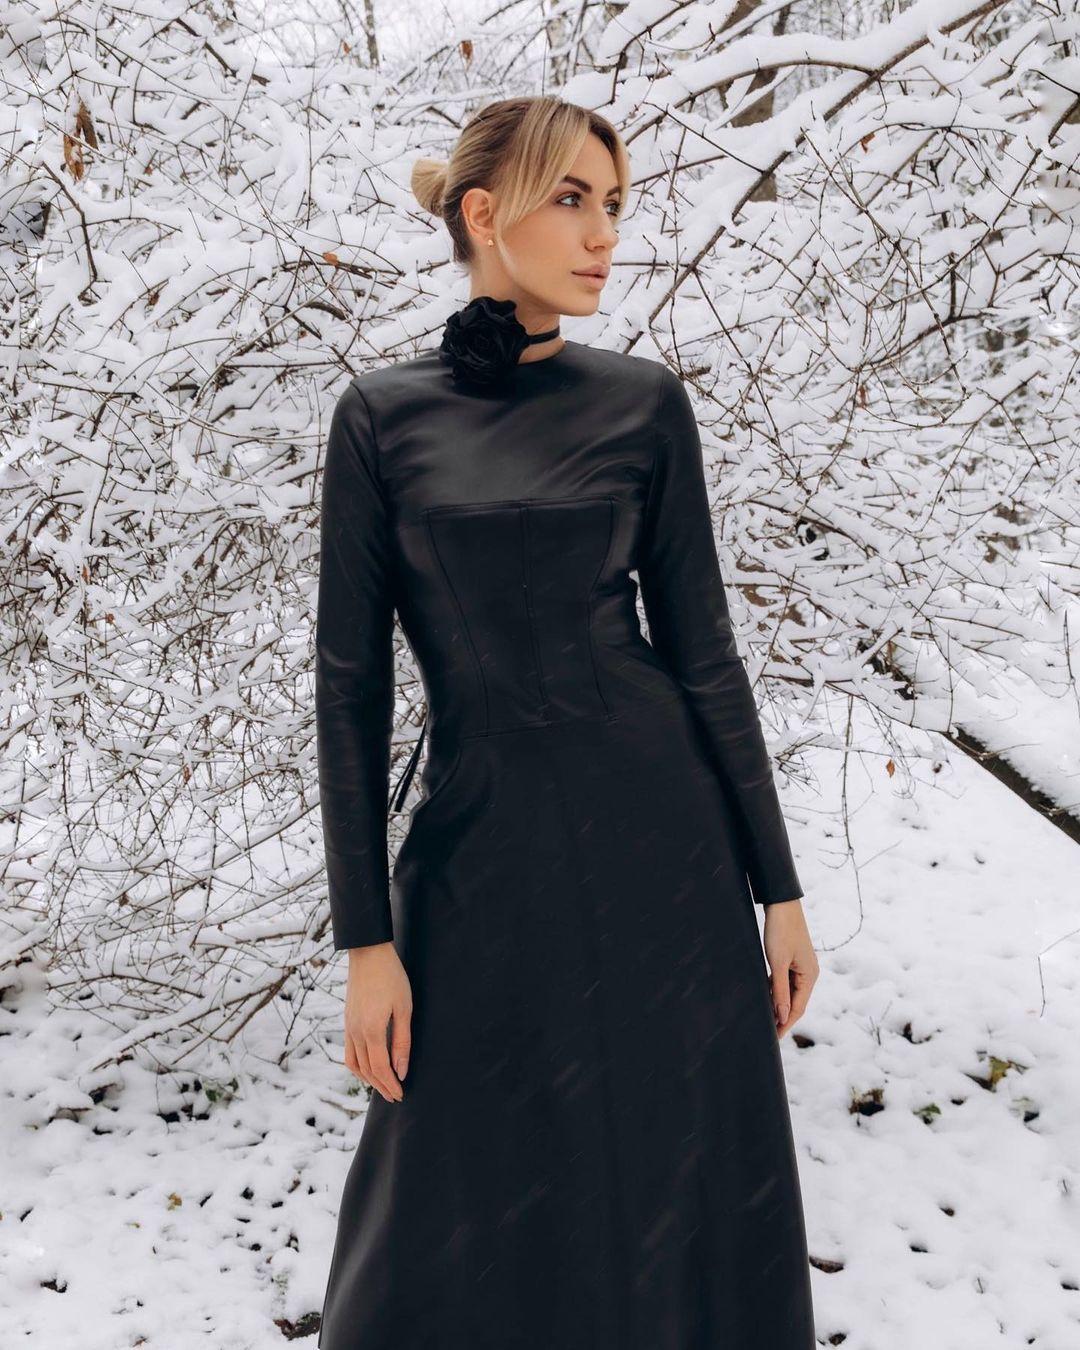 Леся Нікітюк постала в сукні від українського бренду / instagram.com/lesia_nikituk